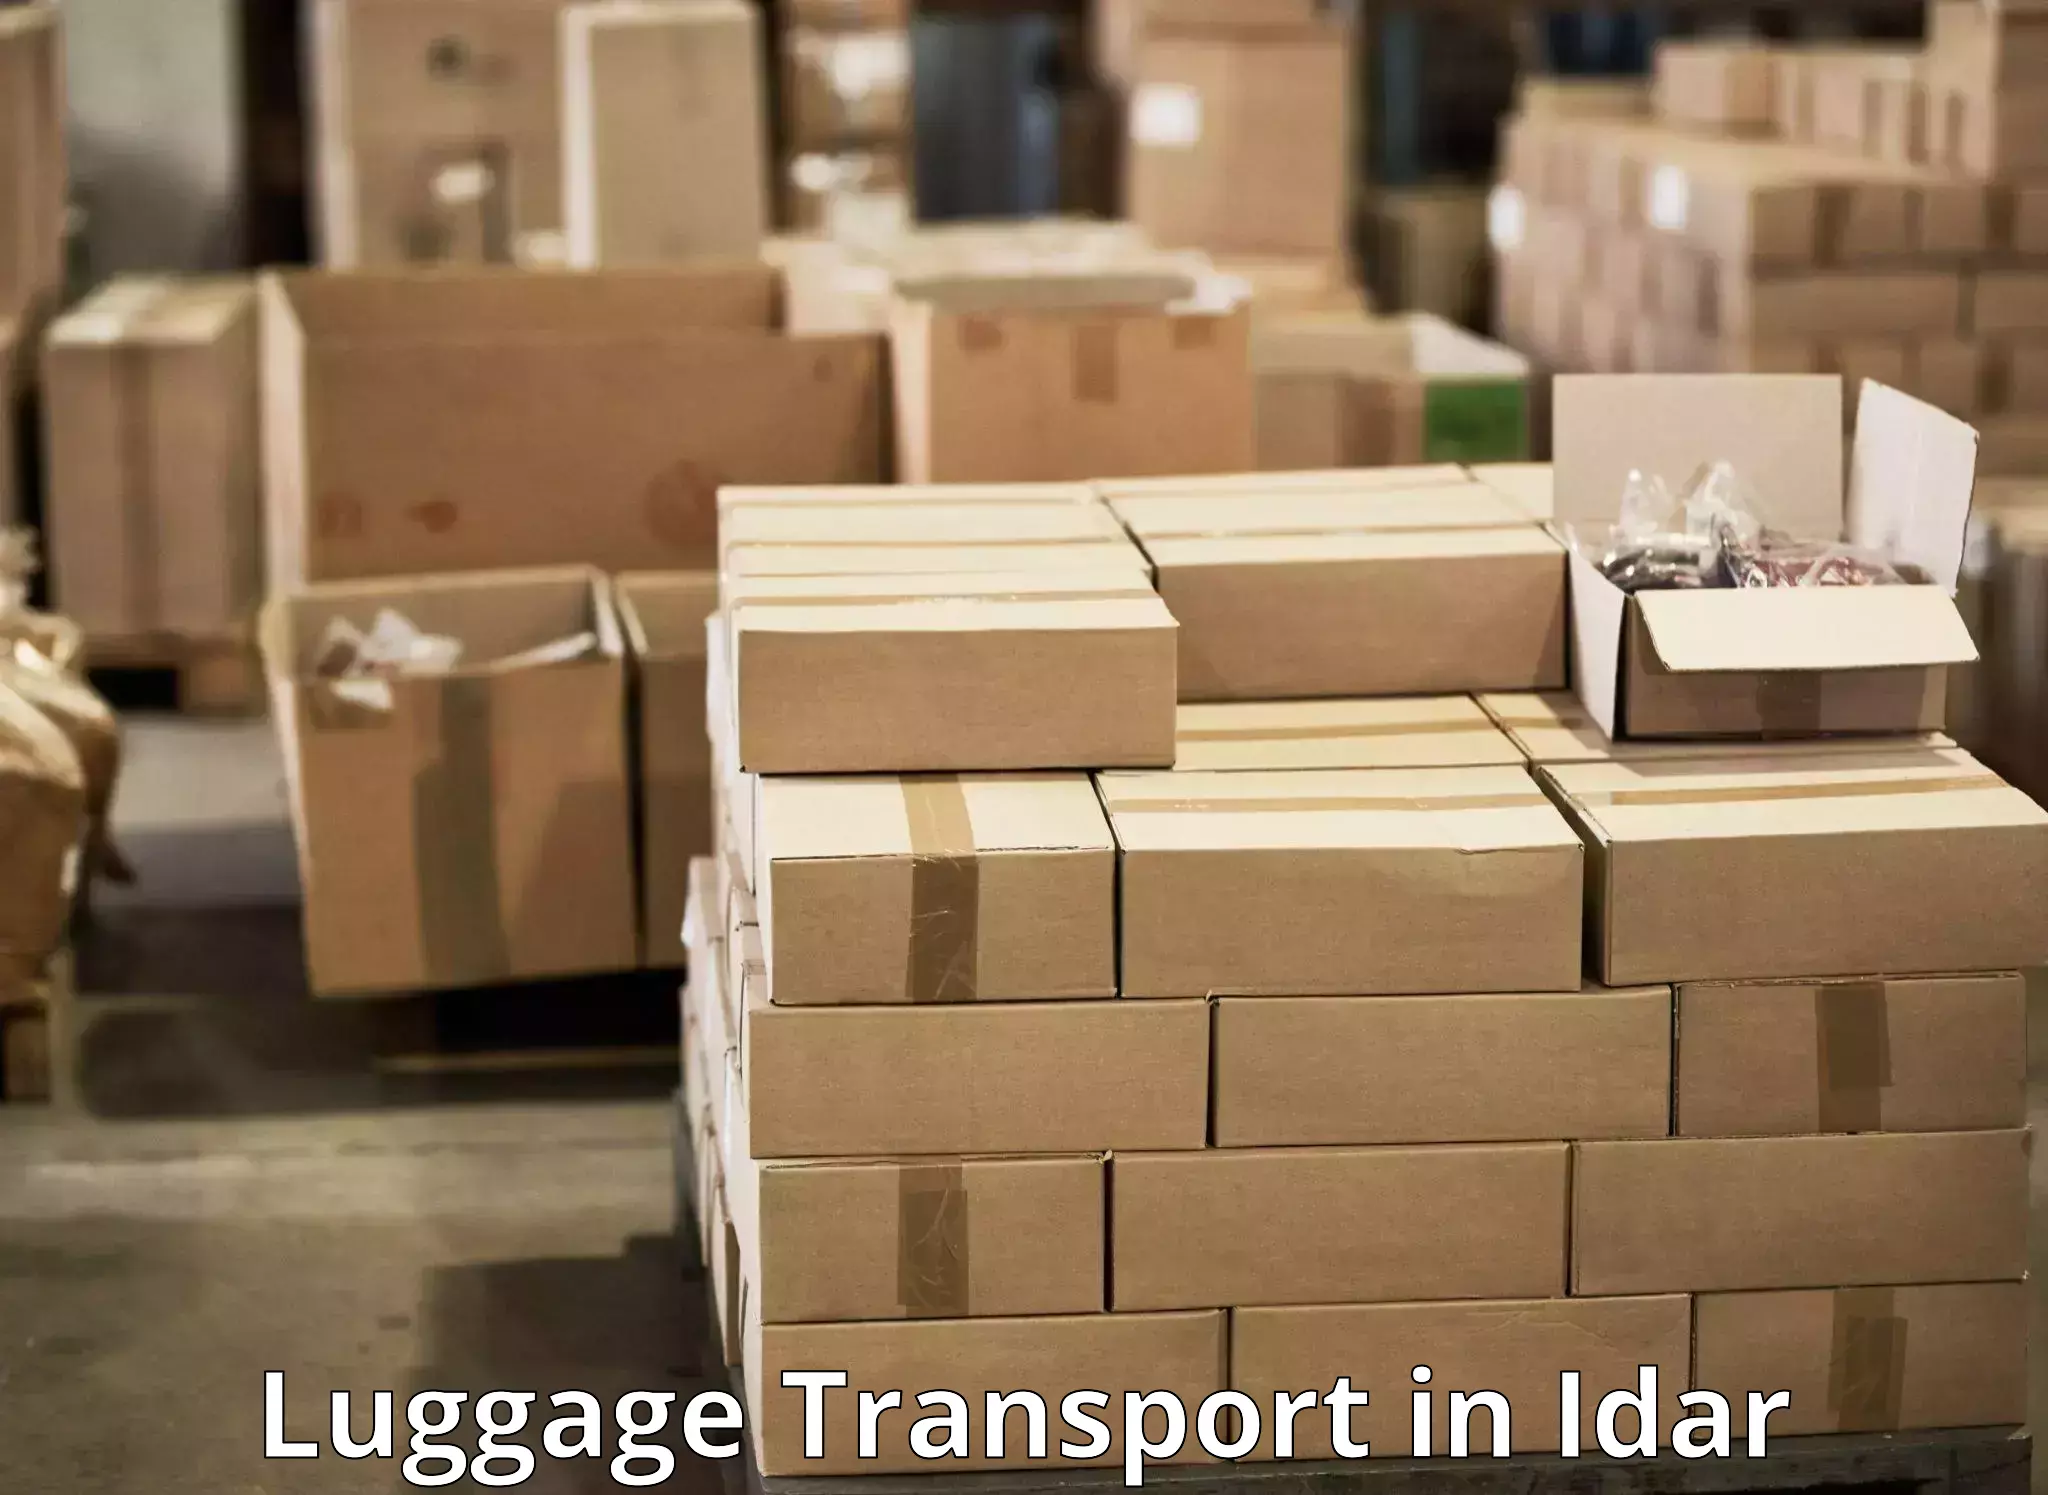 Corporate baggage transport in Idar